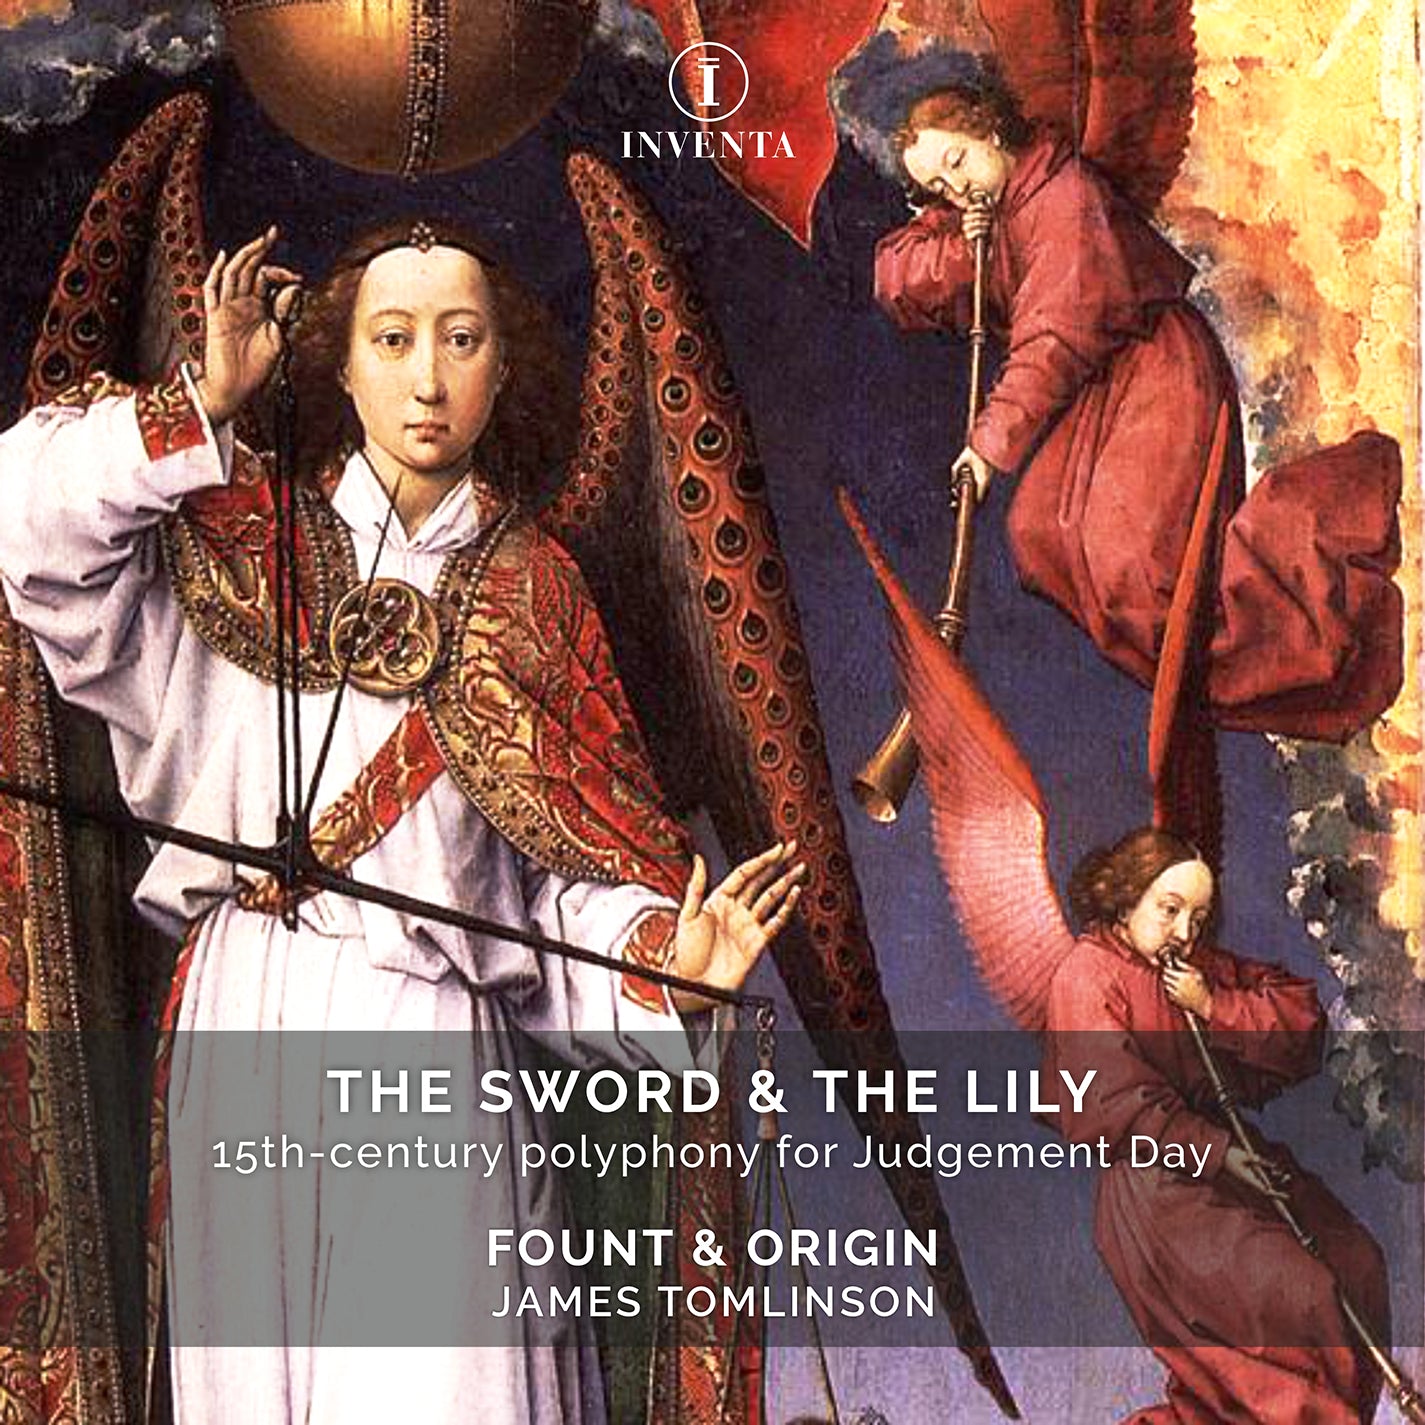 Brumel, Martini, Ockeghem & Regis: The Sword & the Lily / Fount & Origin